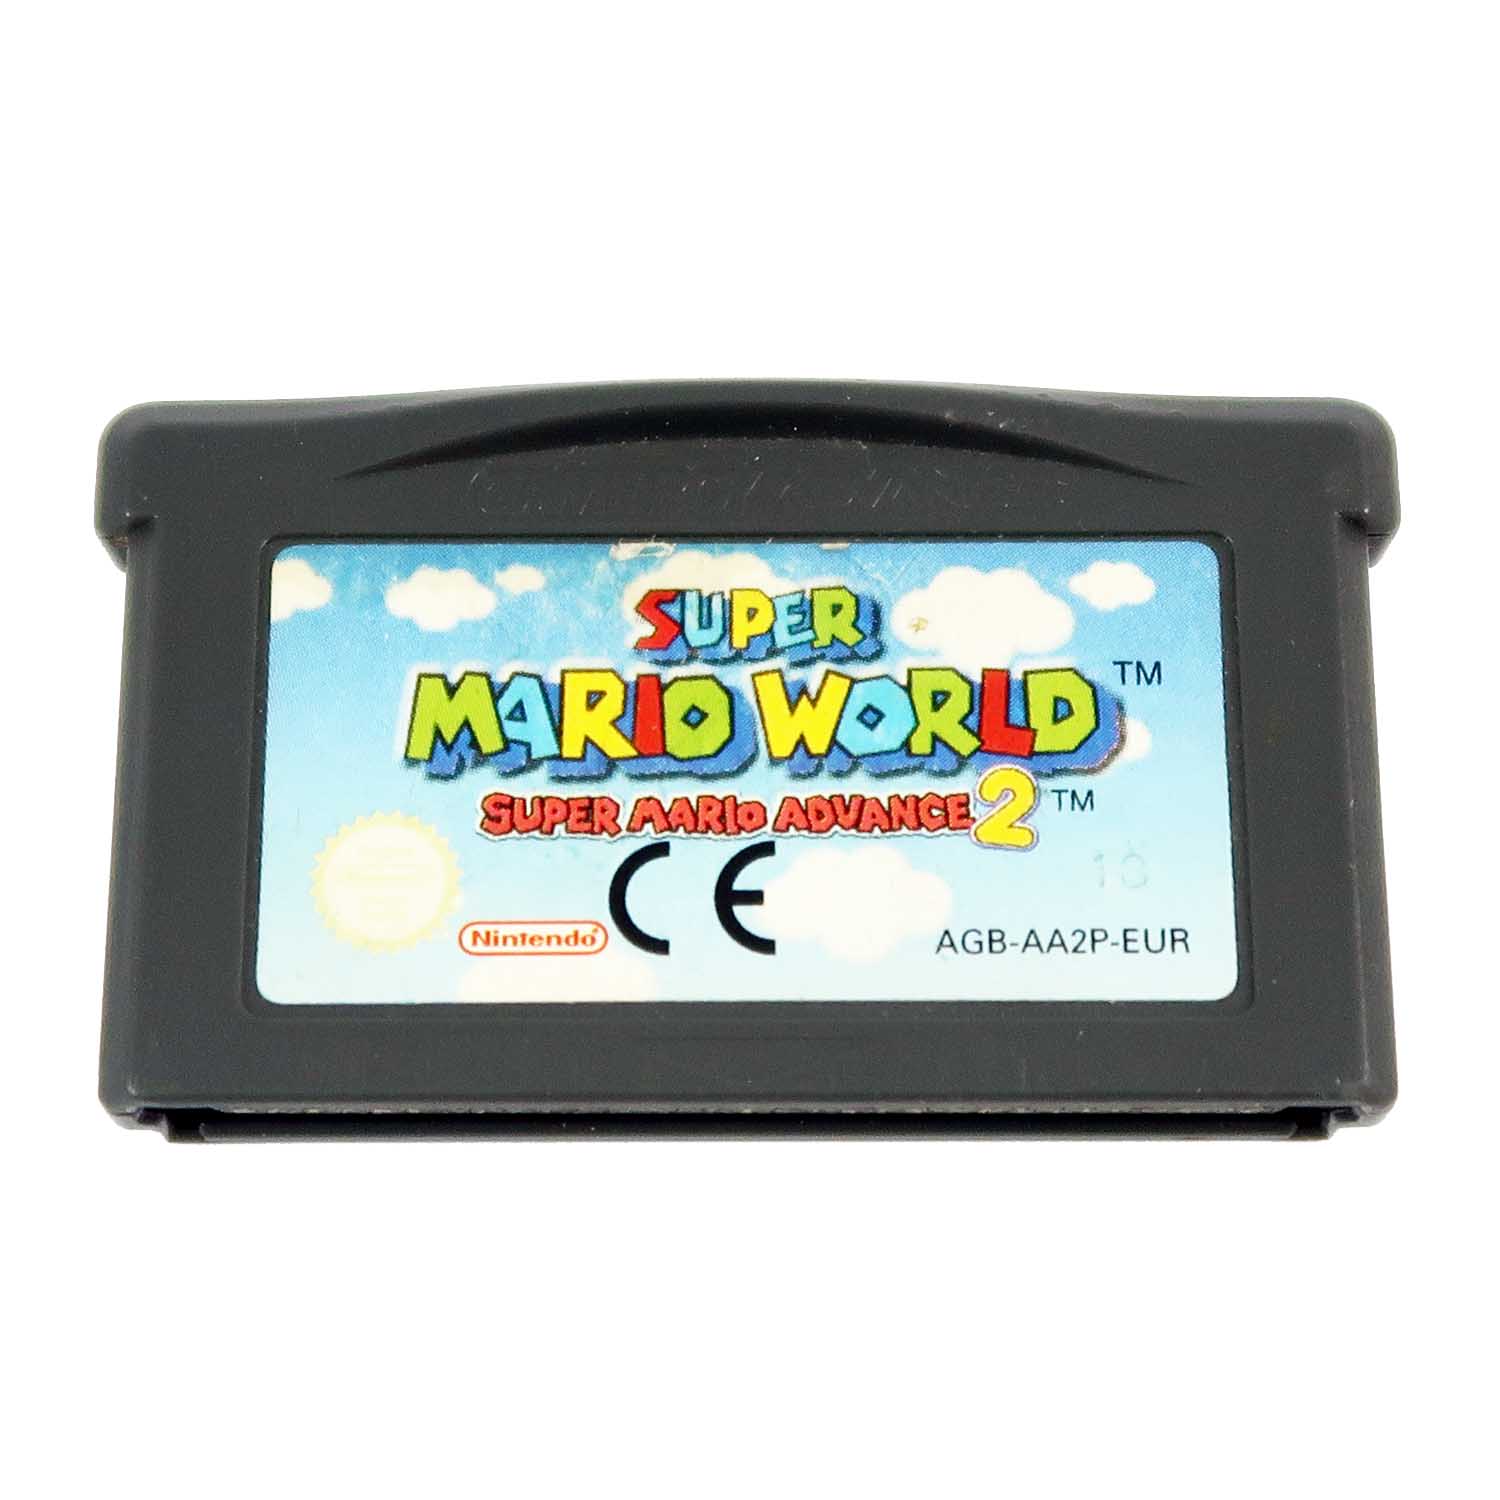 Super Mario World (Super Mario Advance 2) - GBA